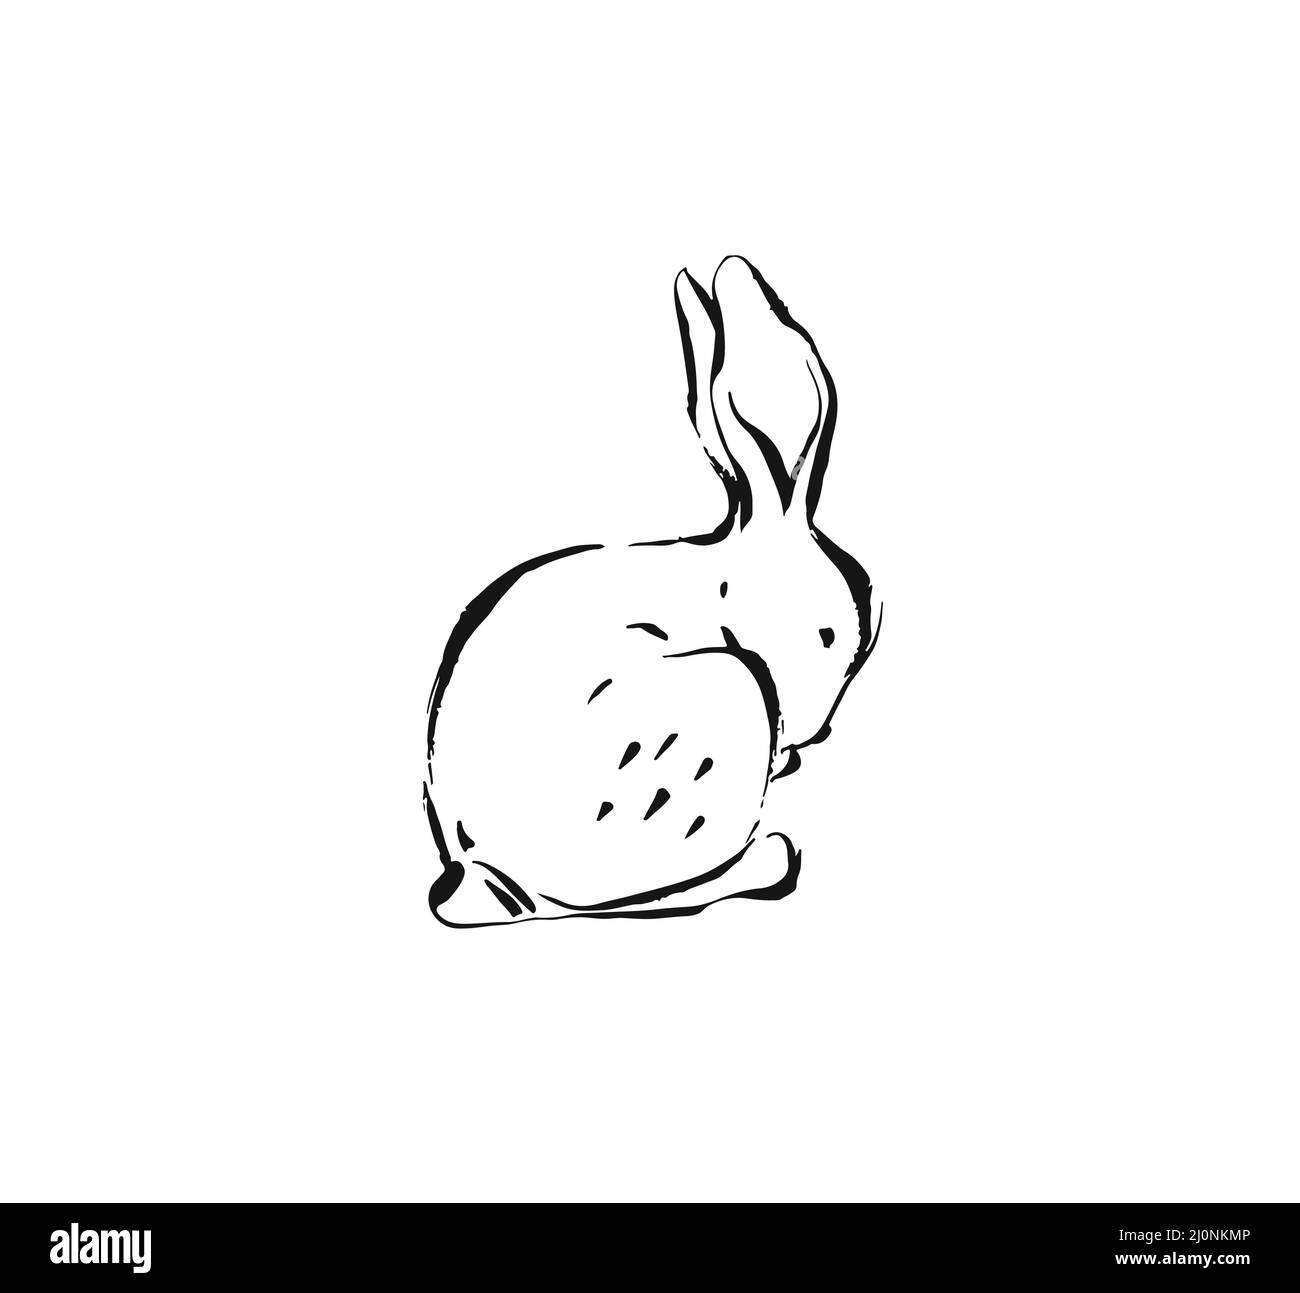 Dessin vectoriel abstrait encre dessin graphique joyeuses Pâques mignon simple lapin illustrations éléments pour votre conception isolé sur blanc Illustration de Vecteur